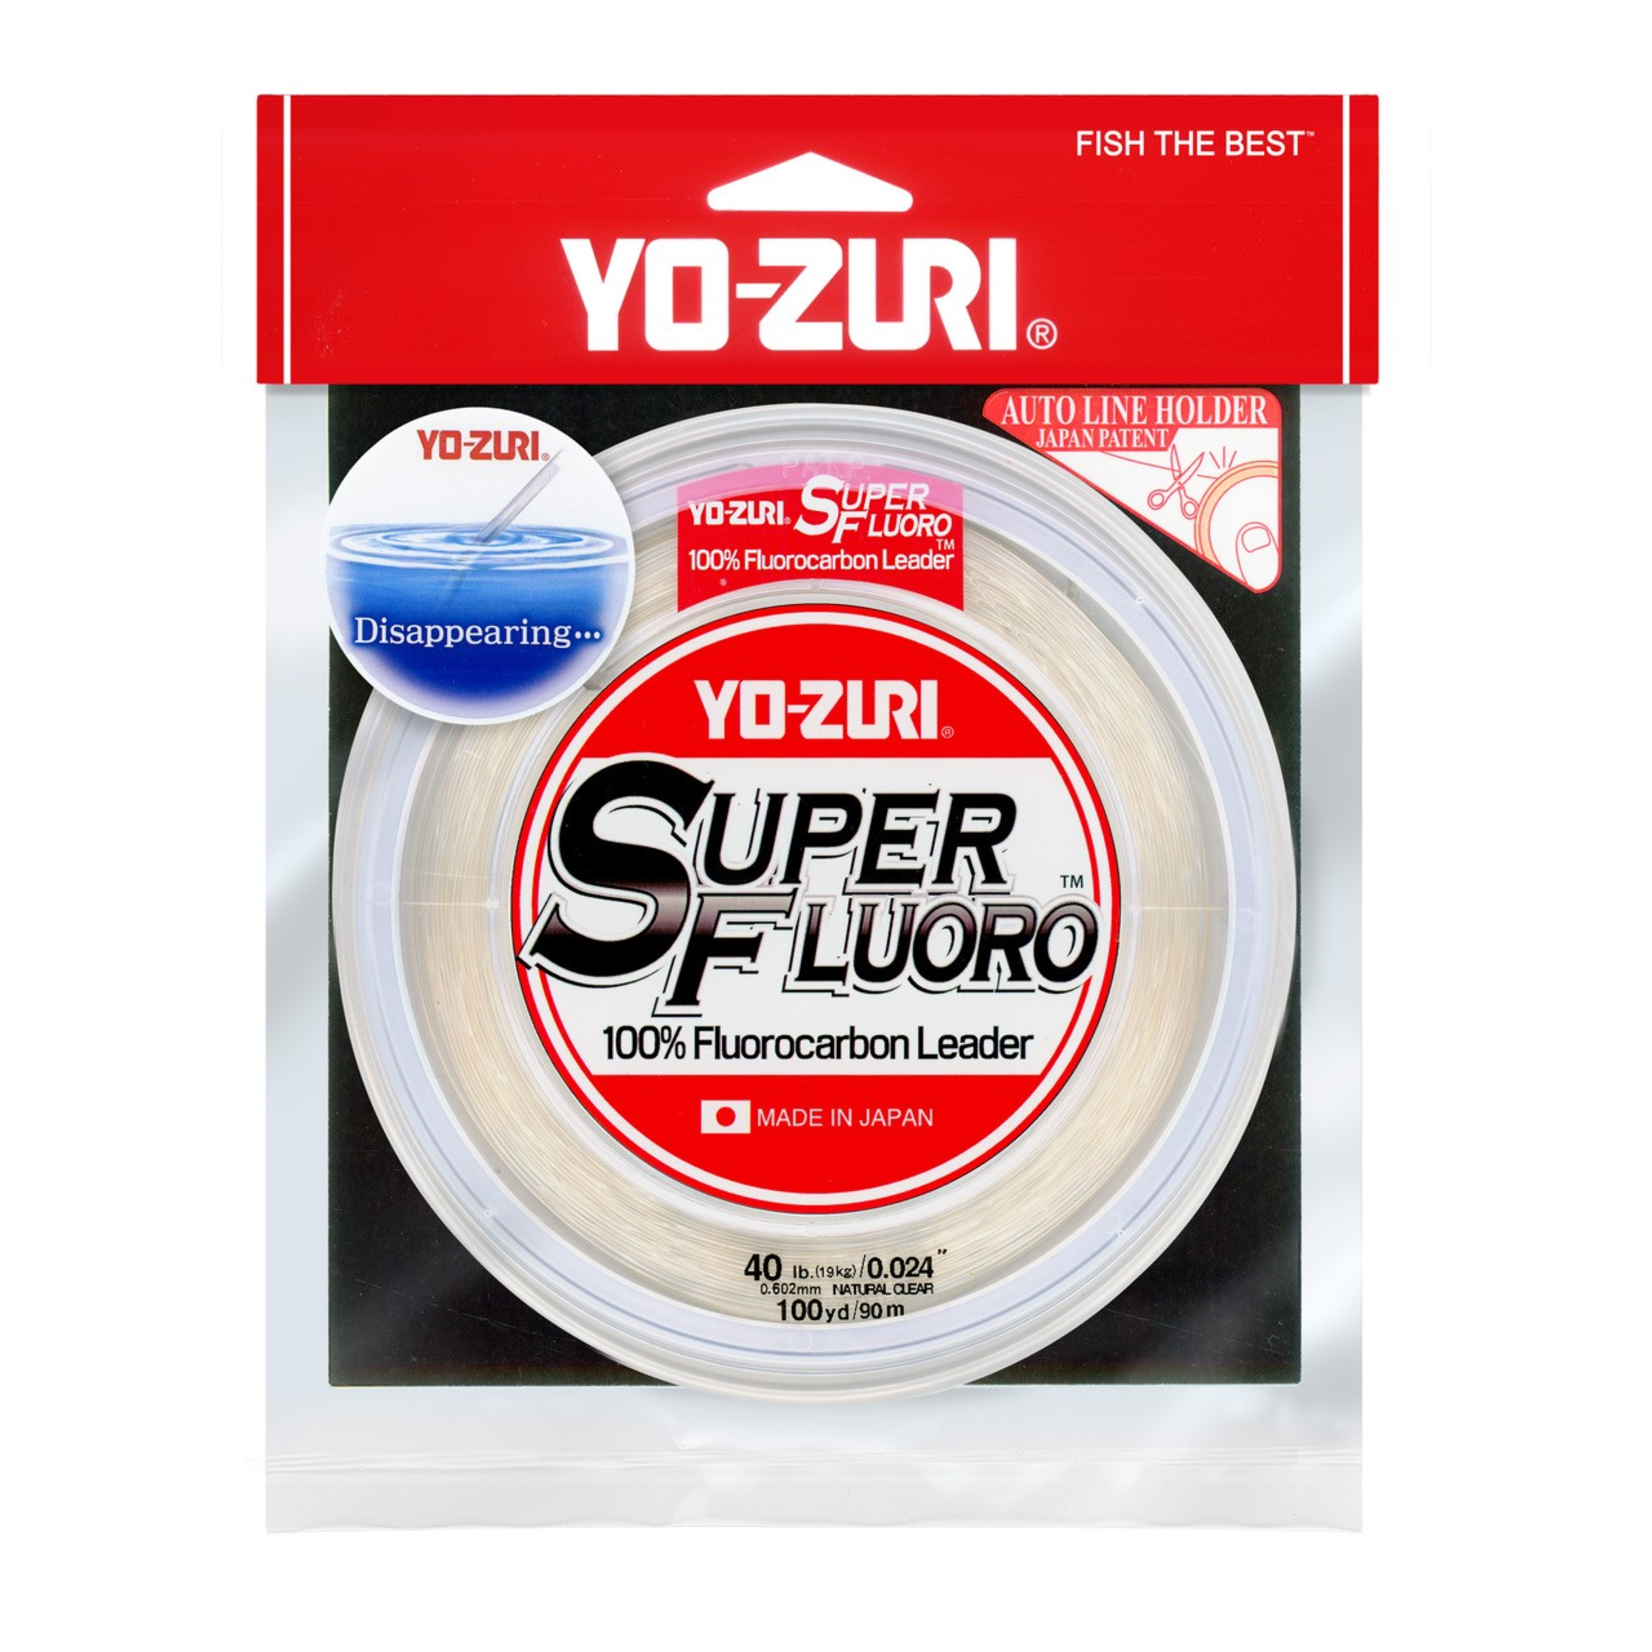 YO-ZURI SUPER FLUORO LEADER